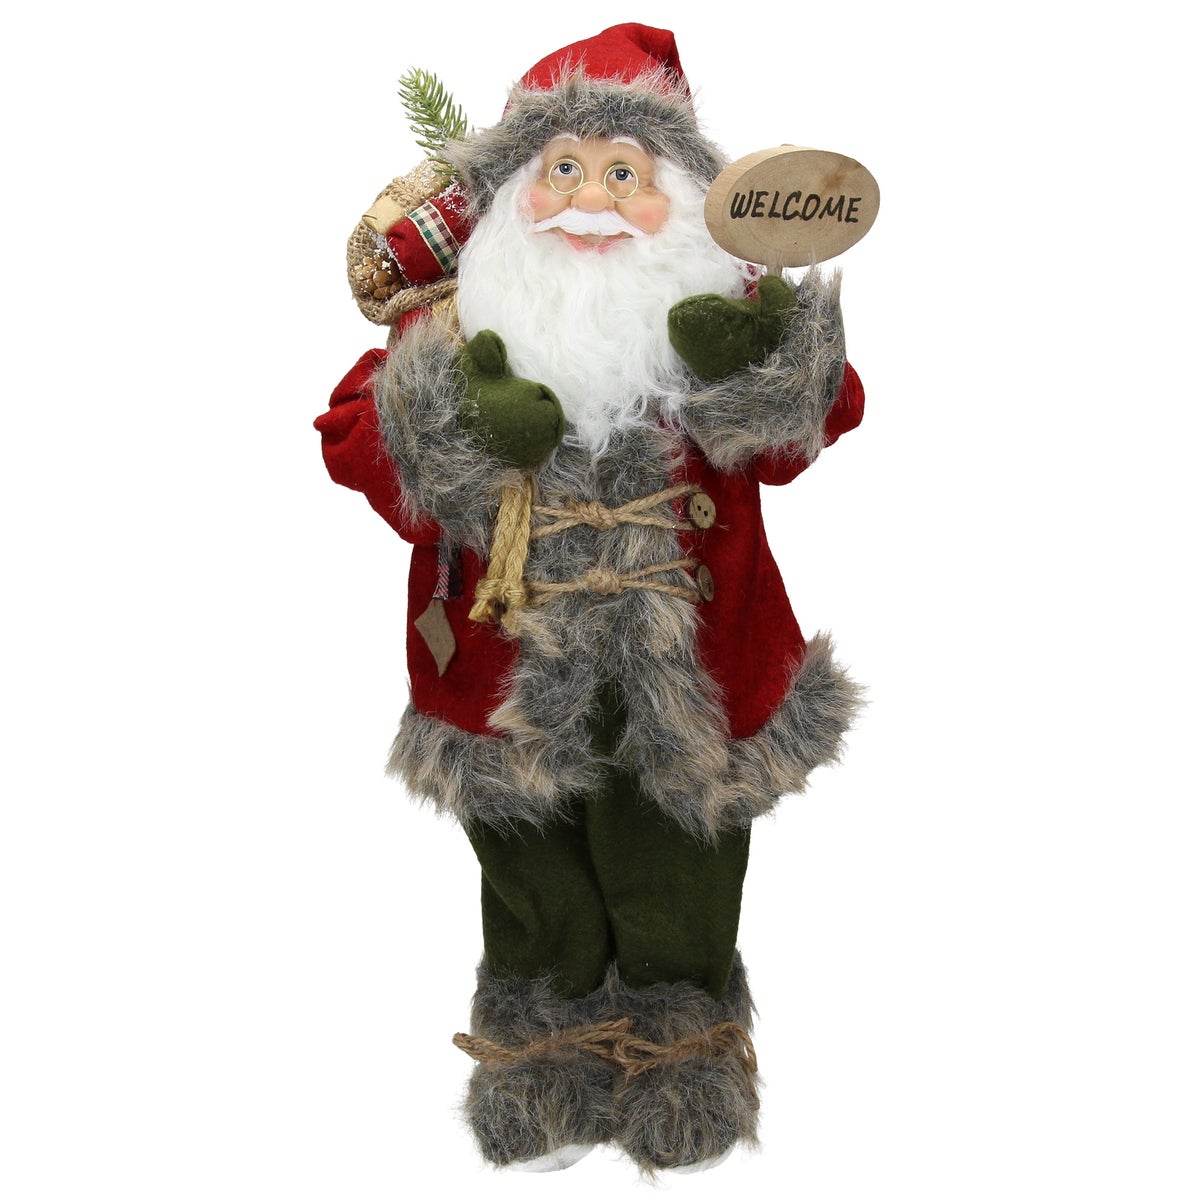 ECD Germany Weihnachtsmann aus Polyresin, 22 x 14 x 47 cm, Rot, Grün, Winter Tischdeko, Winterdeko, Weihnachten Figur, Dekoration, Santa Claus, Nikolaus, Deko-Figur, Weihnachtsdekoration